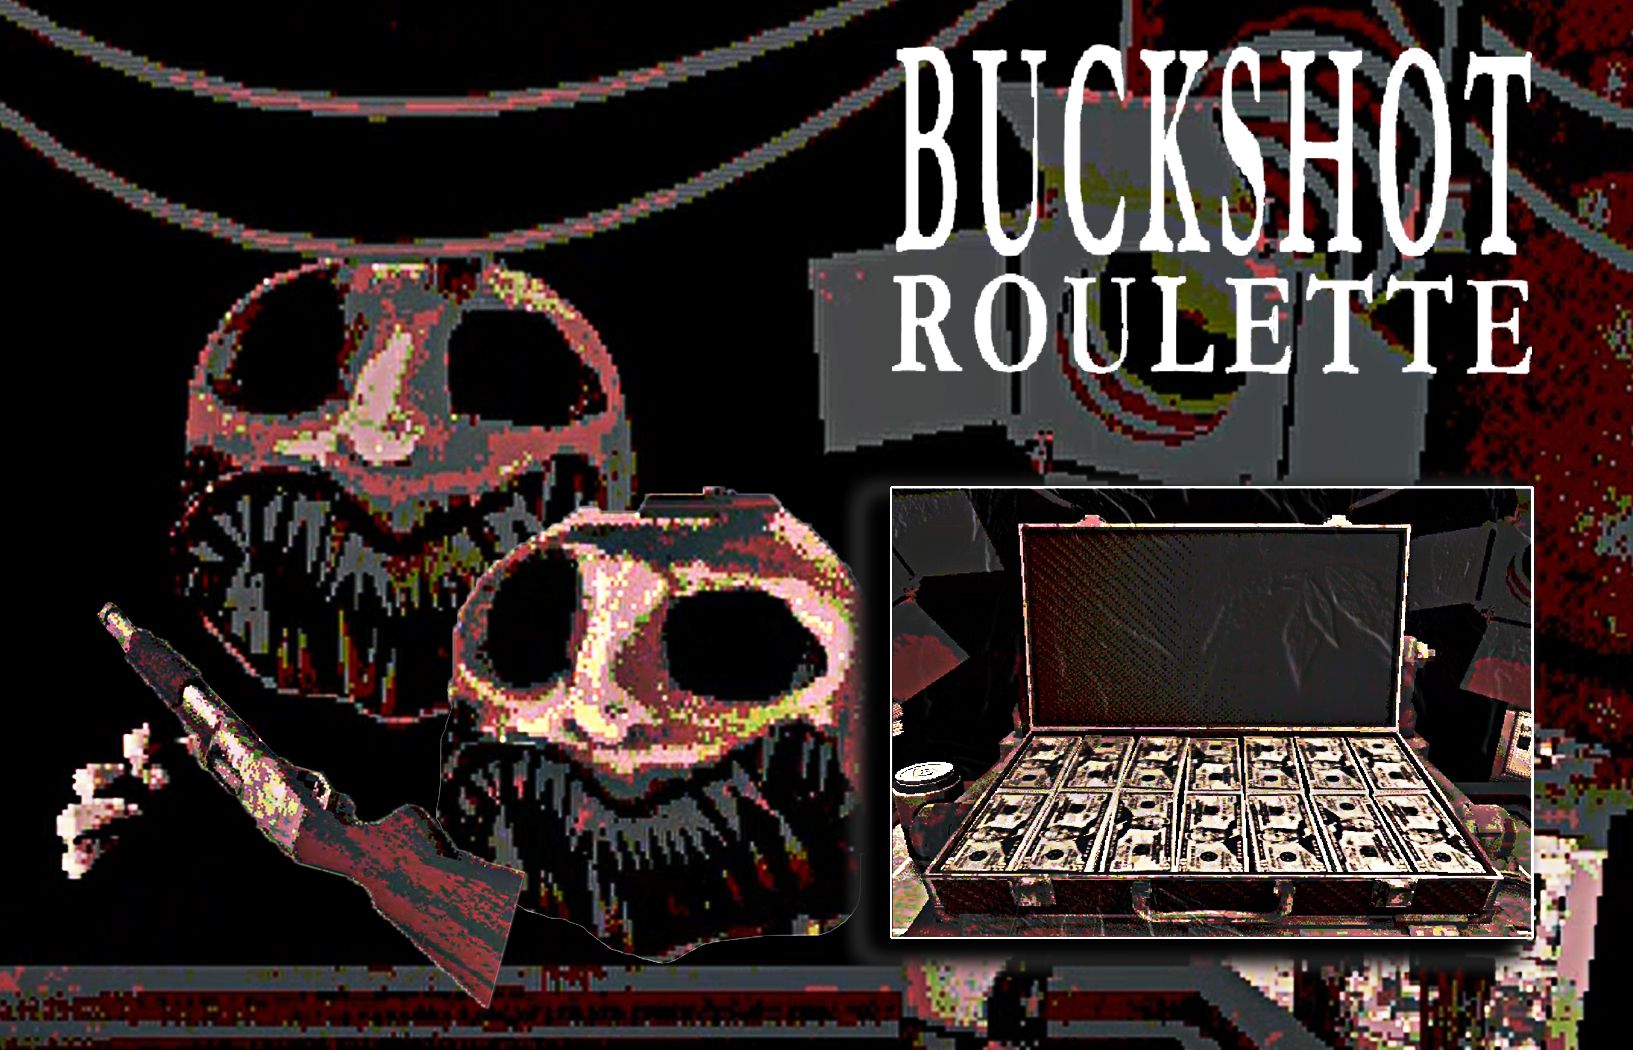 buckshot roulette有哪些道具可以获得 全部道具效果介绍